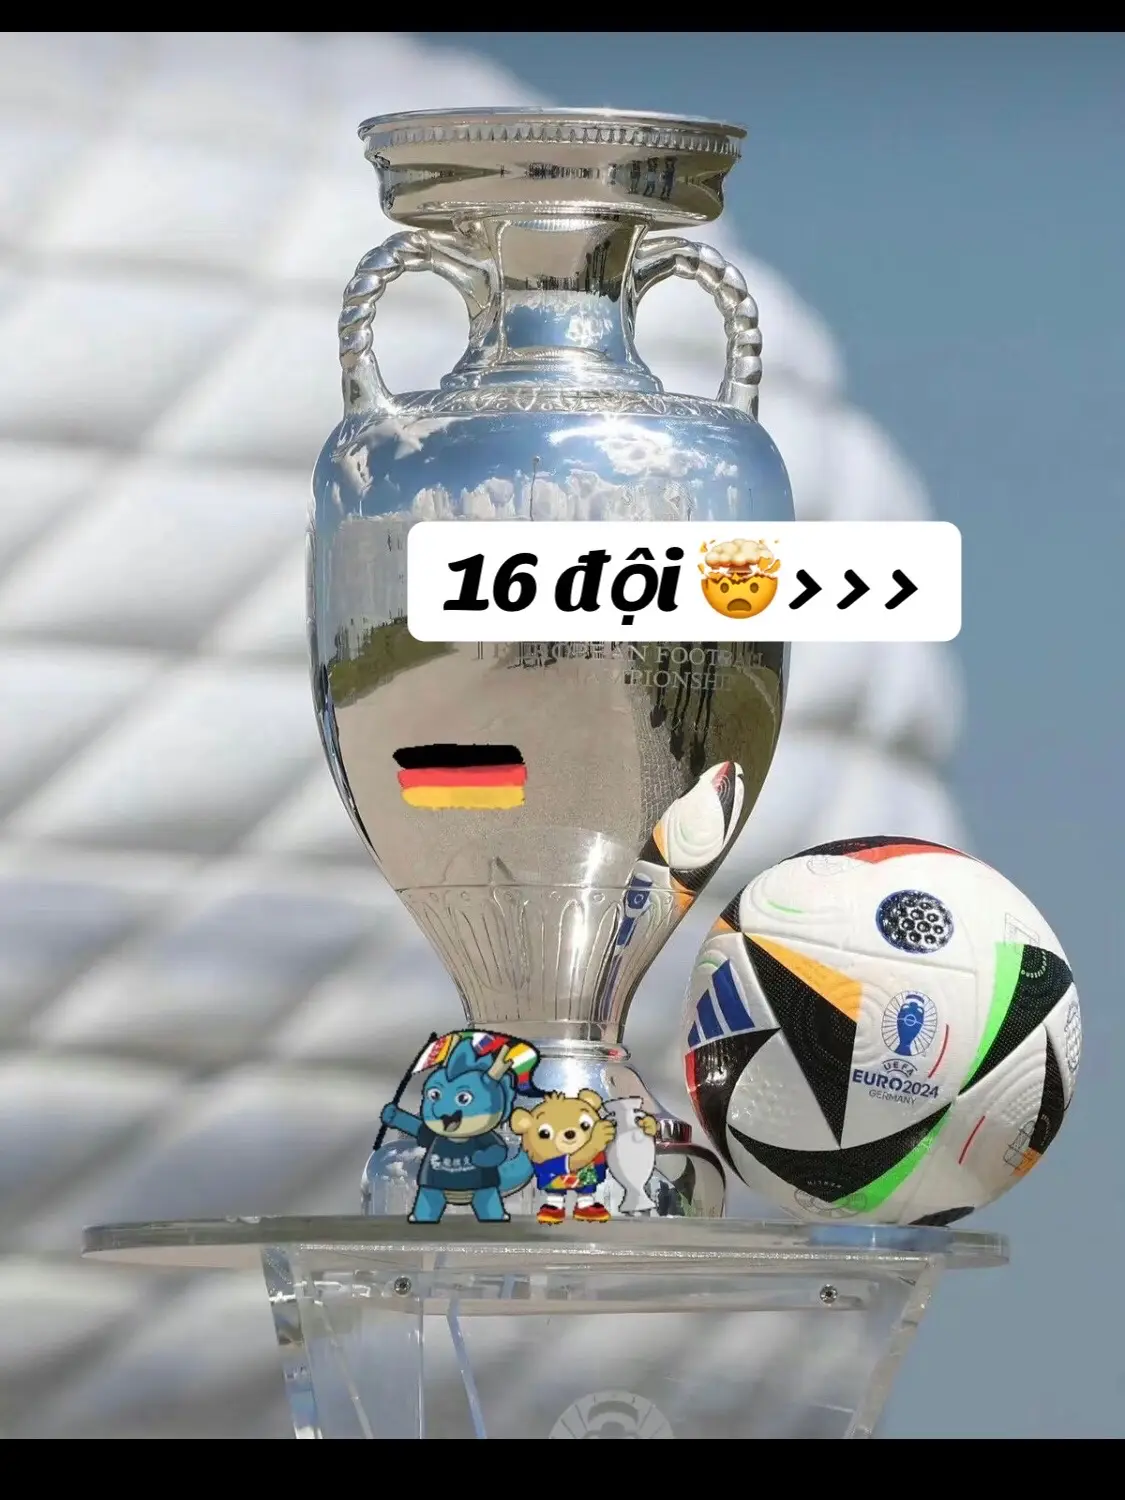 #EURO2024 #16đội #football #tđinh👑 #xhhhhhhhhhhhhhhhhhhhhhhhhhhhhh 